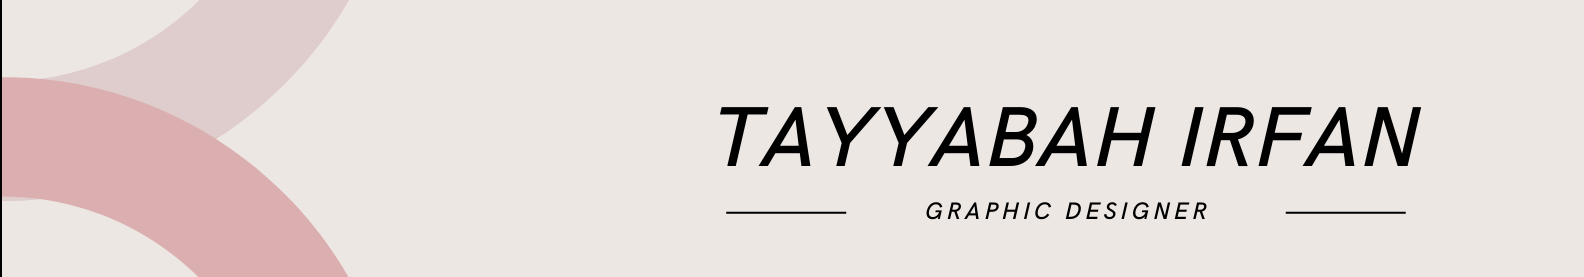 Tayyabah Irfan's profile banner